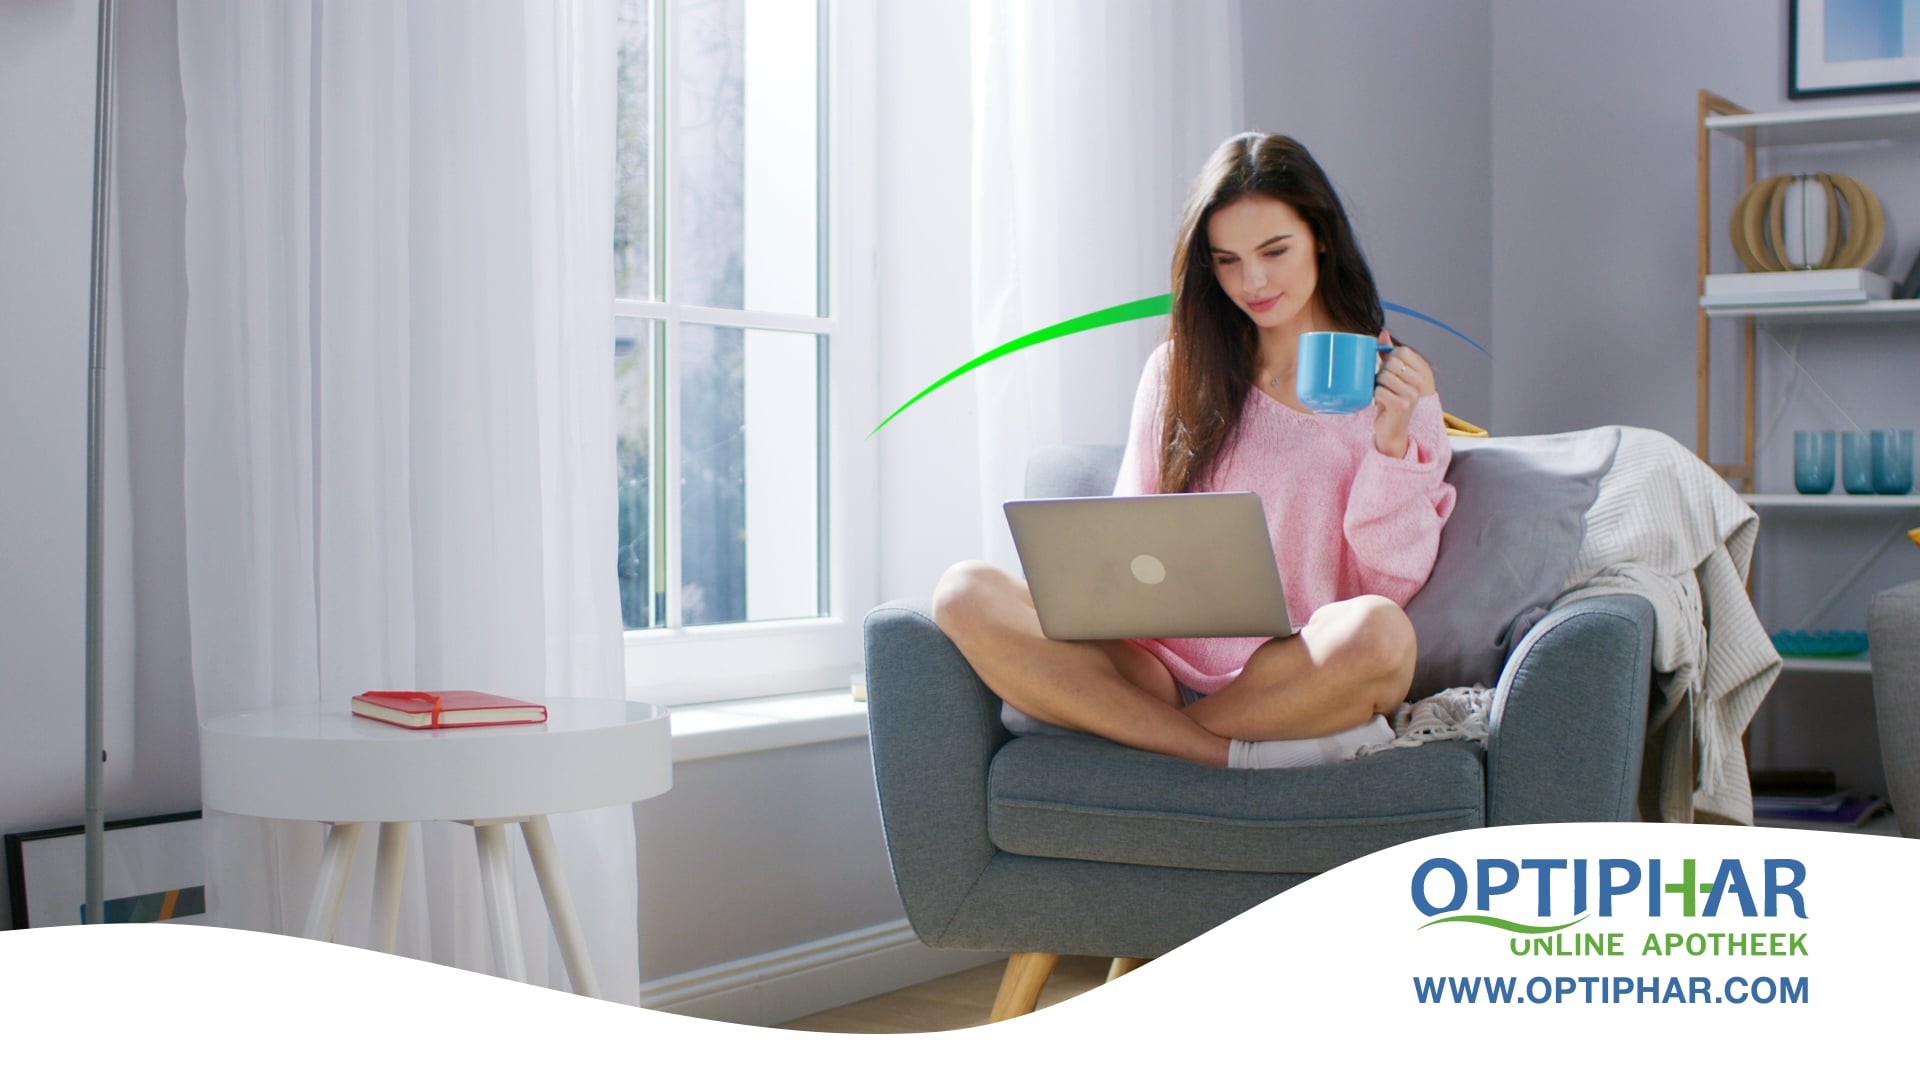 Optiphar Online Apotheek